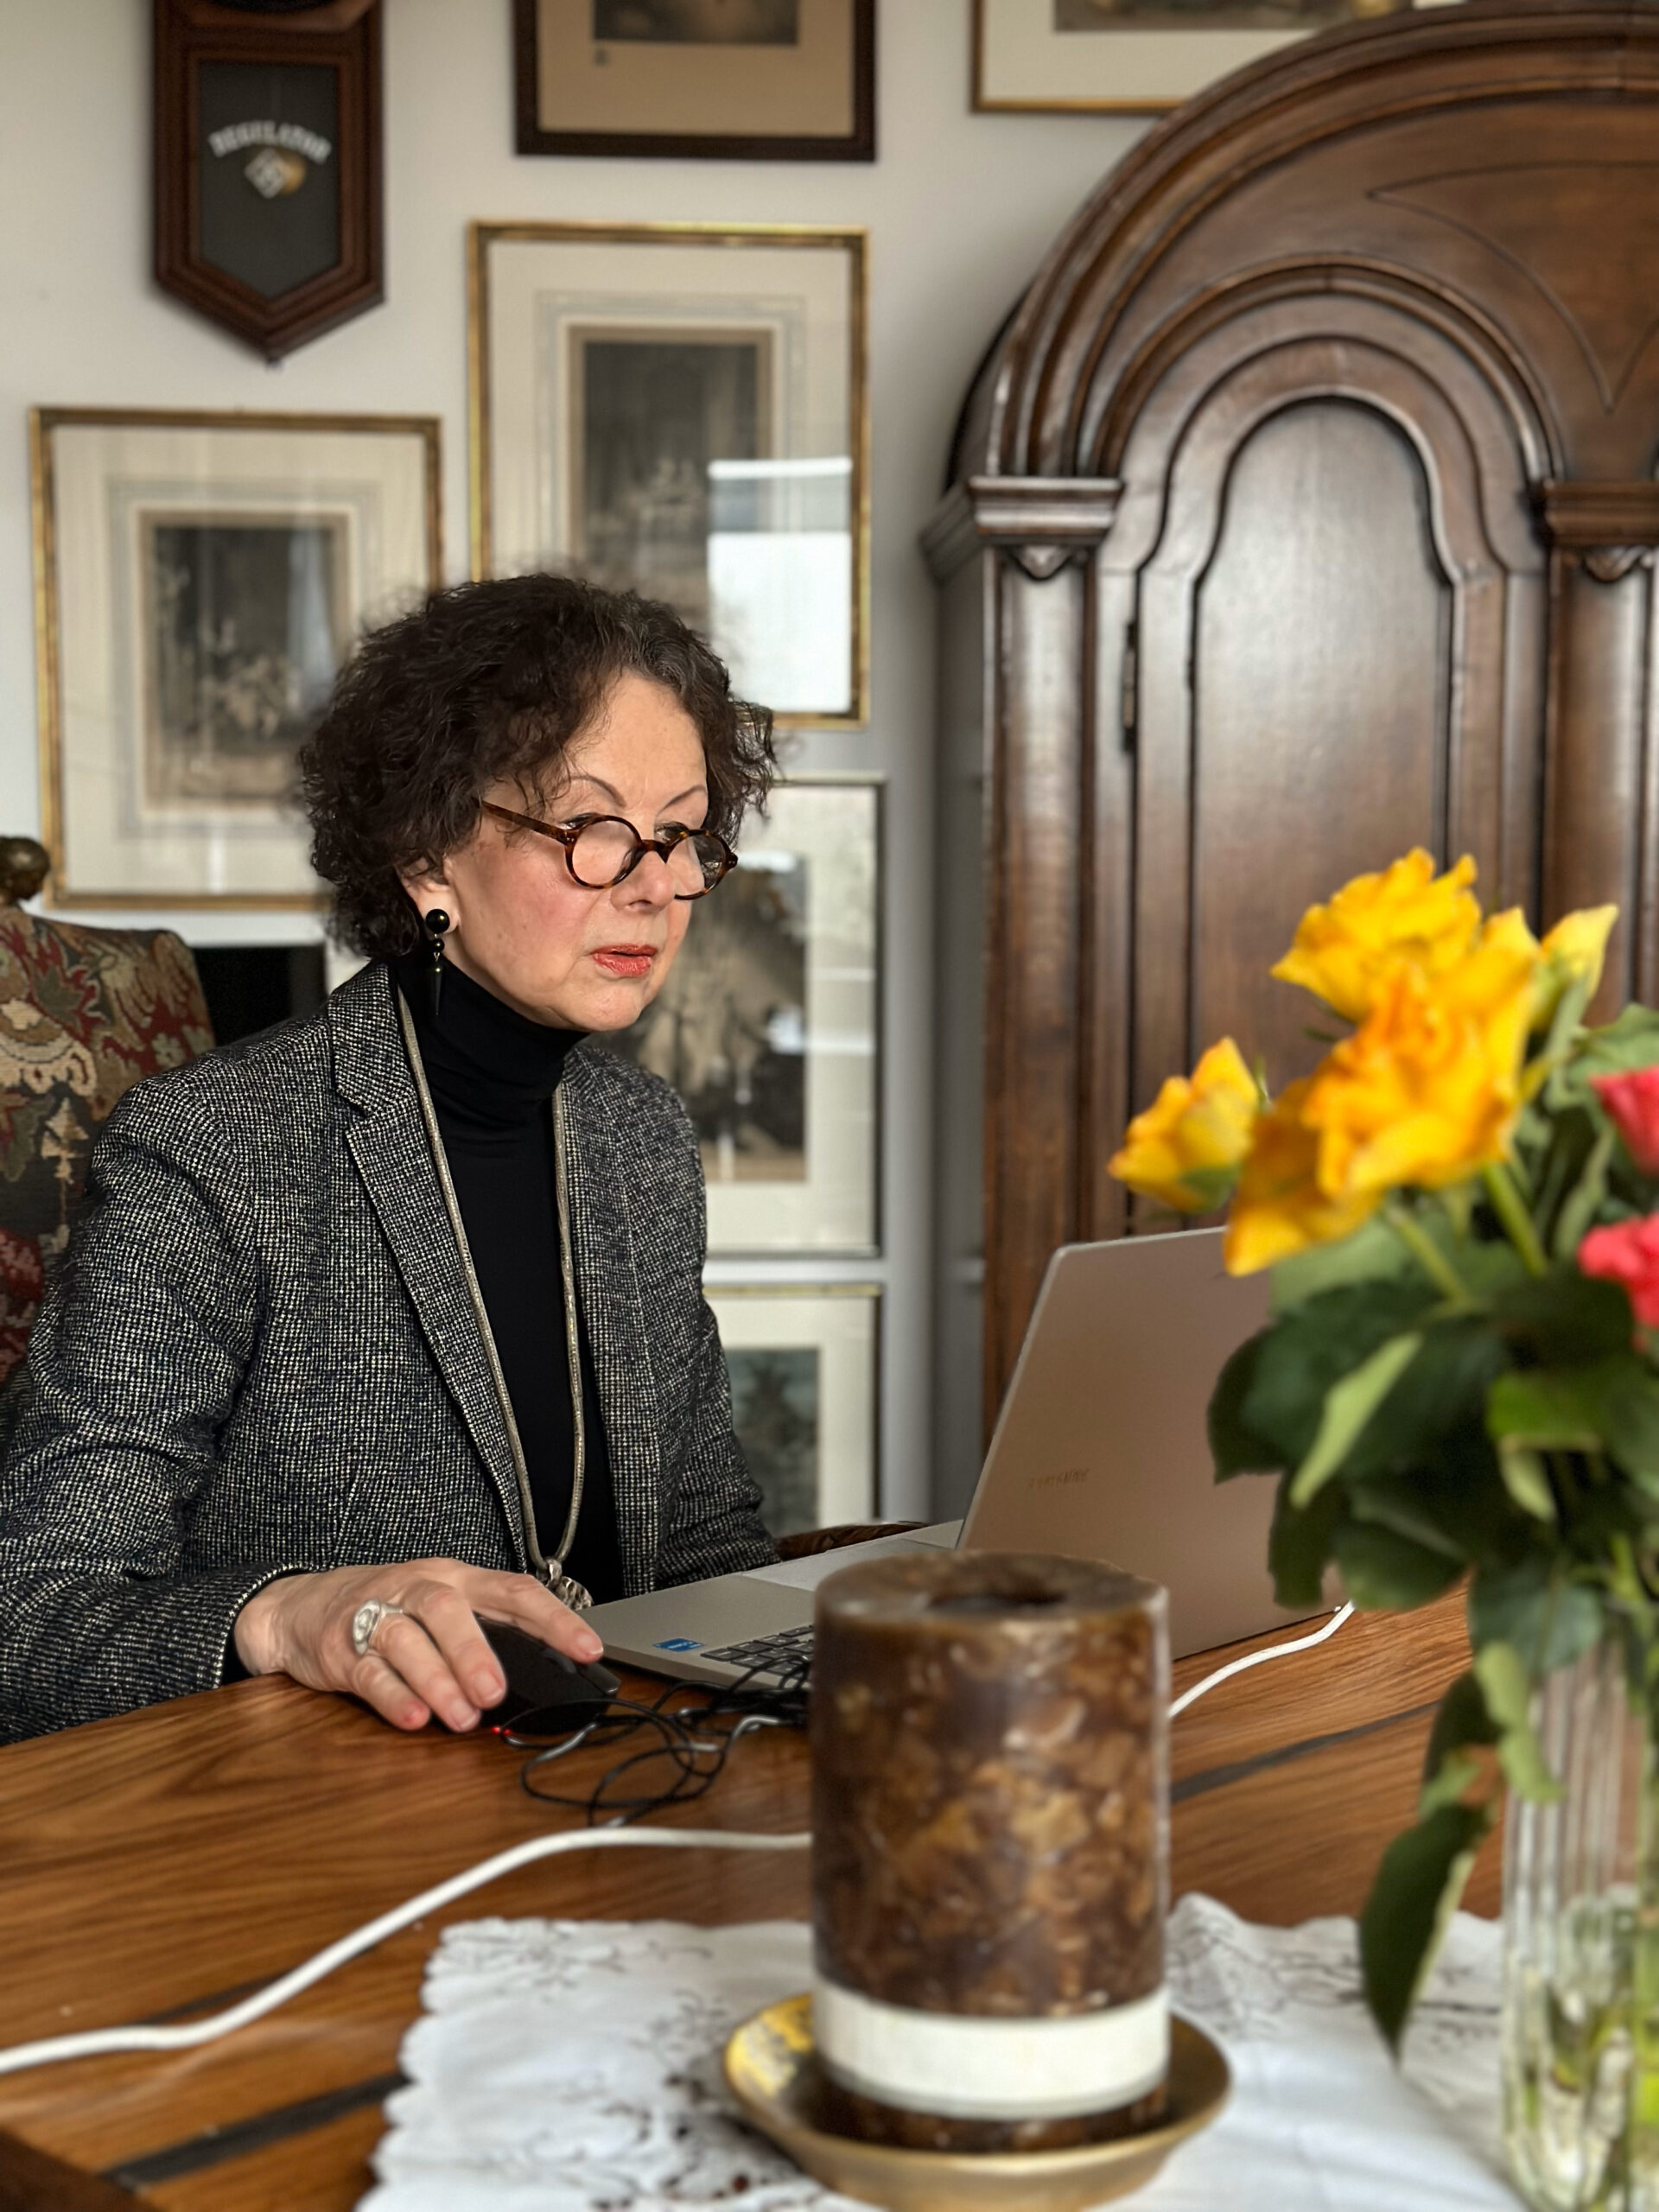 Eine Frau mit braunen, lockigen Haaren und schwarzer Brille sitzt vor einem Laptop. Der Tisch ist mit einer Kerze und Blumen geschmückt. Hinter ihr antike Möbel.